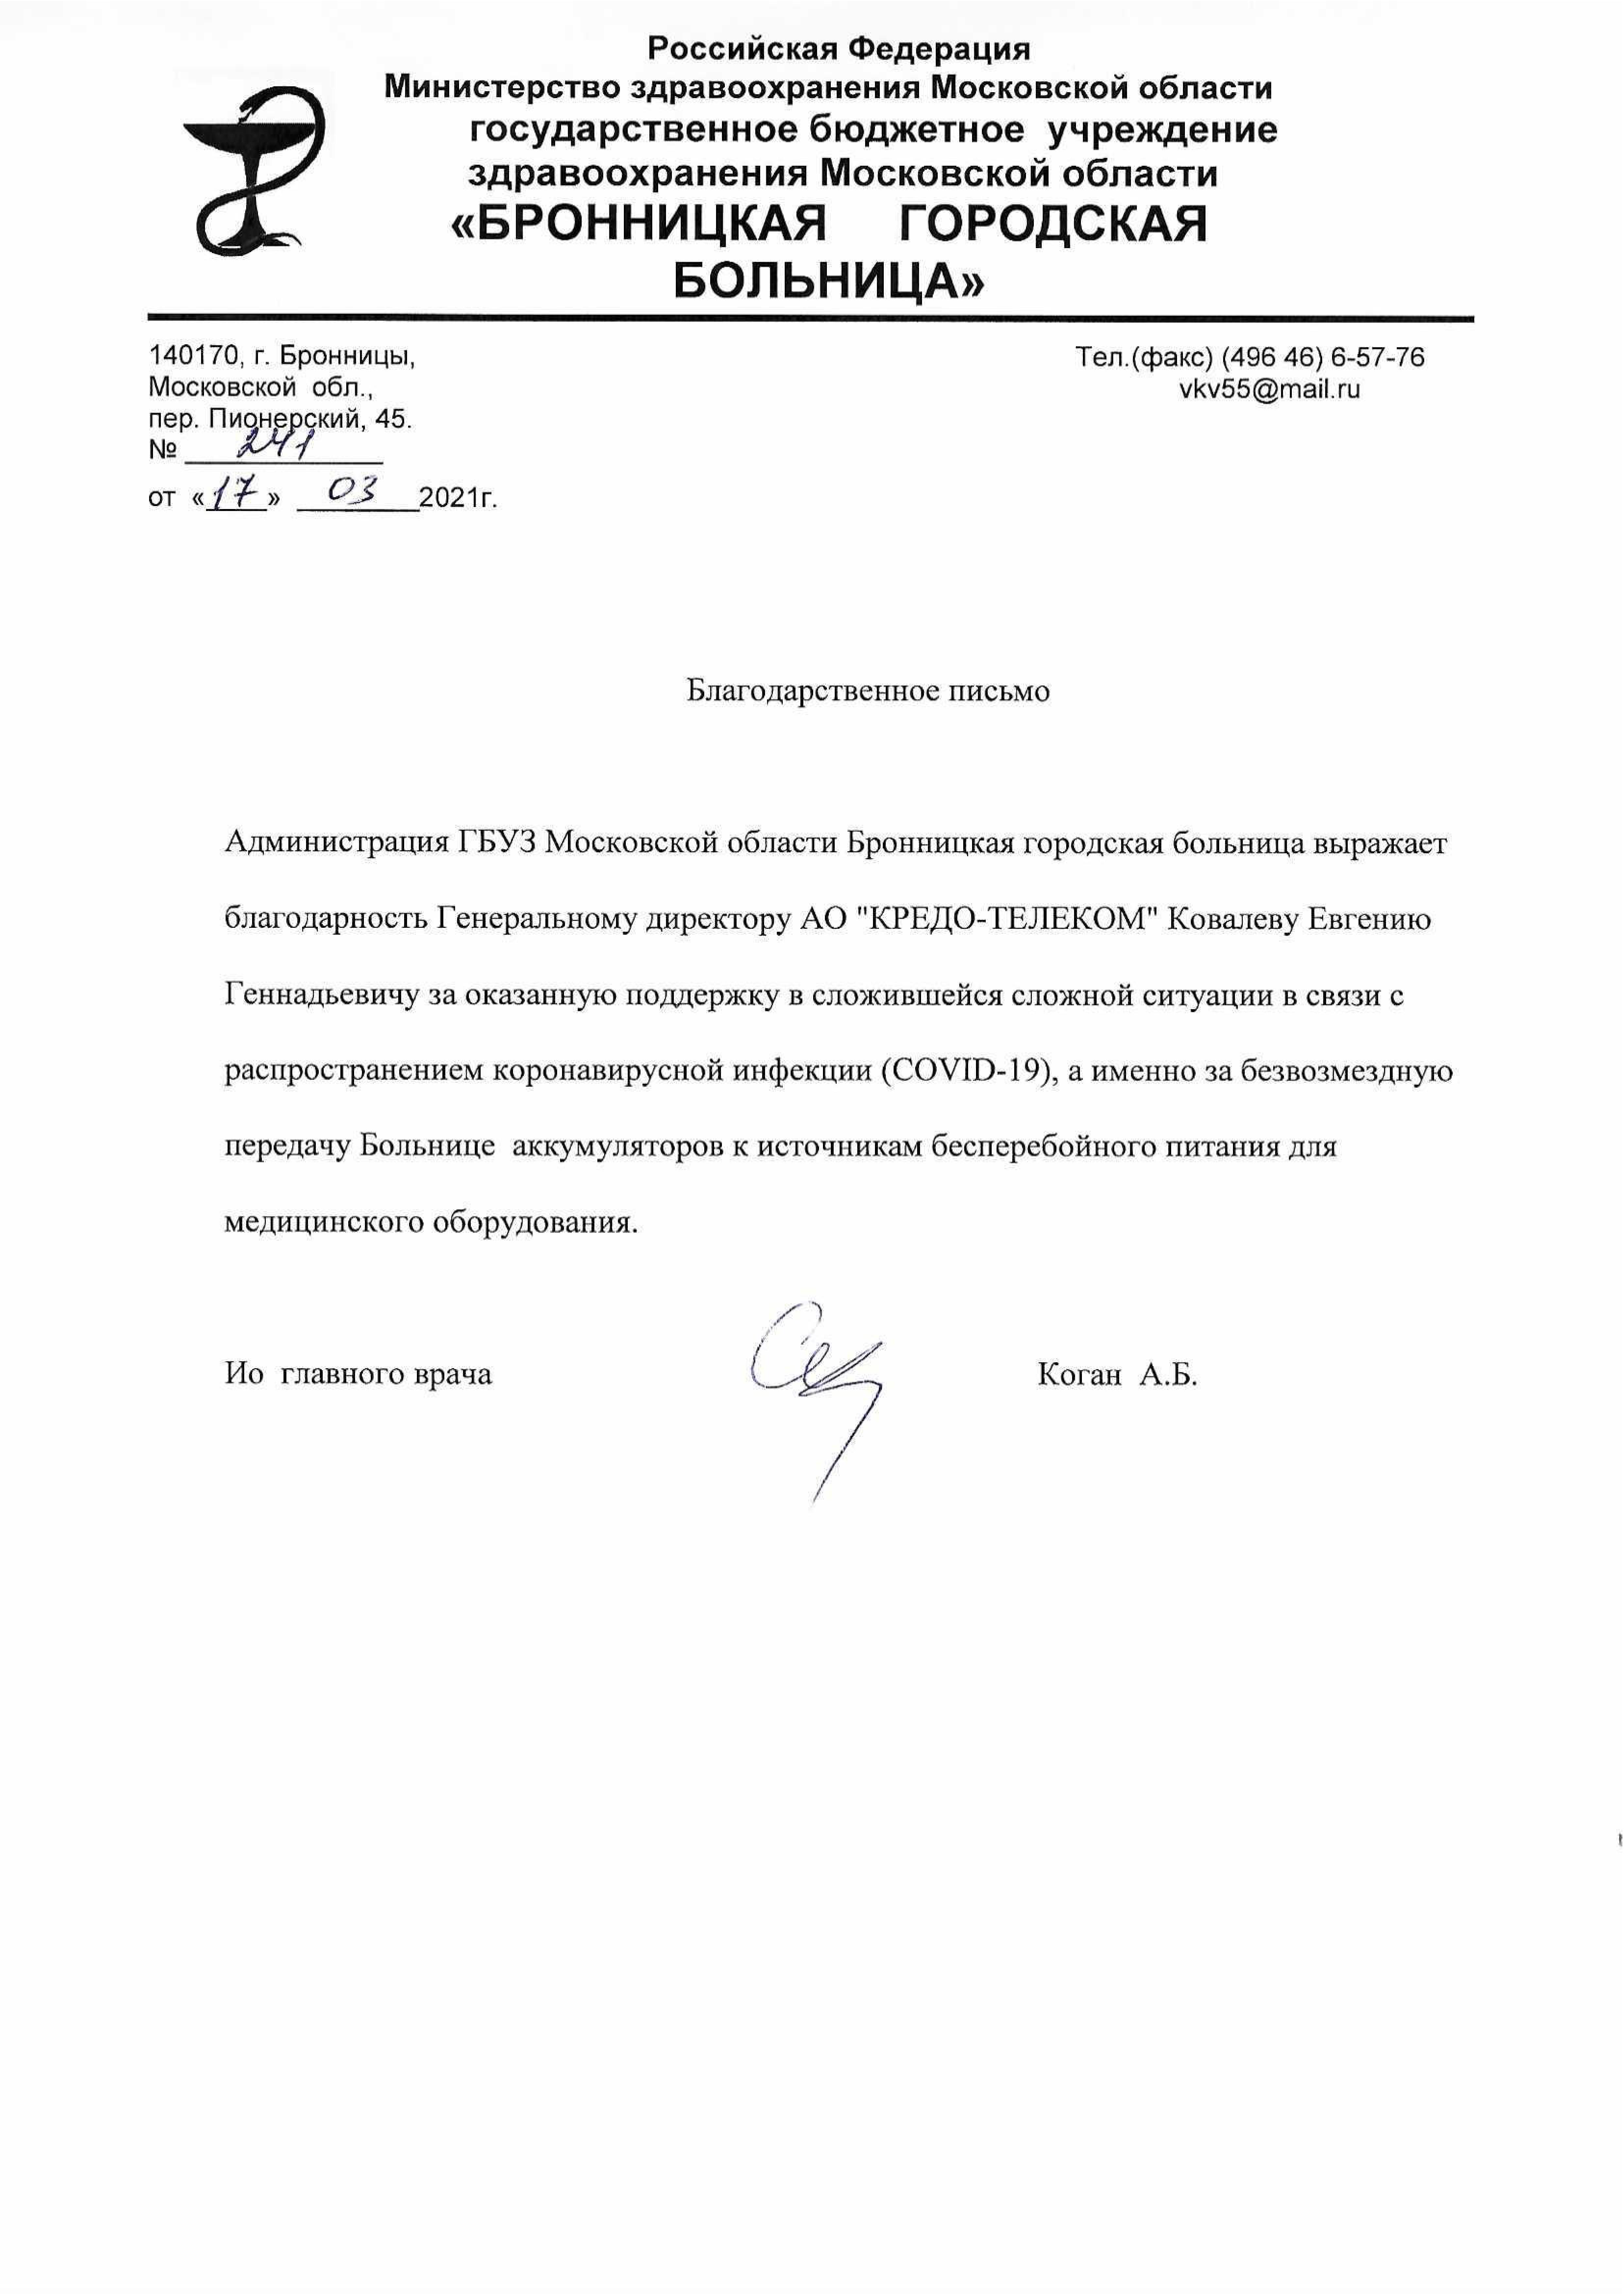 Благодарственное письмо генеральному директору АО "КРЕДО-ТЕЛЕКОМ"